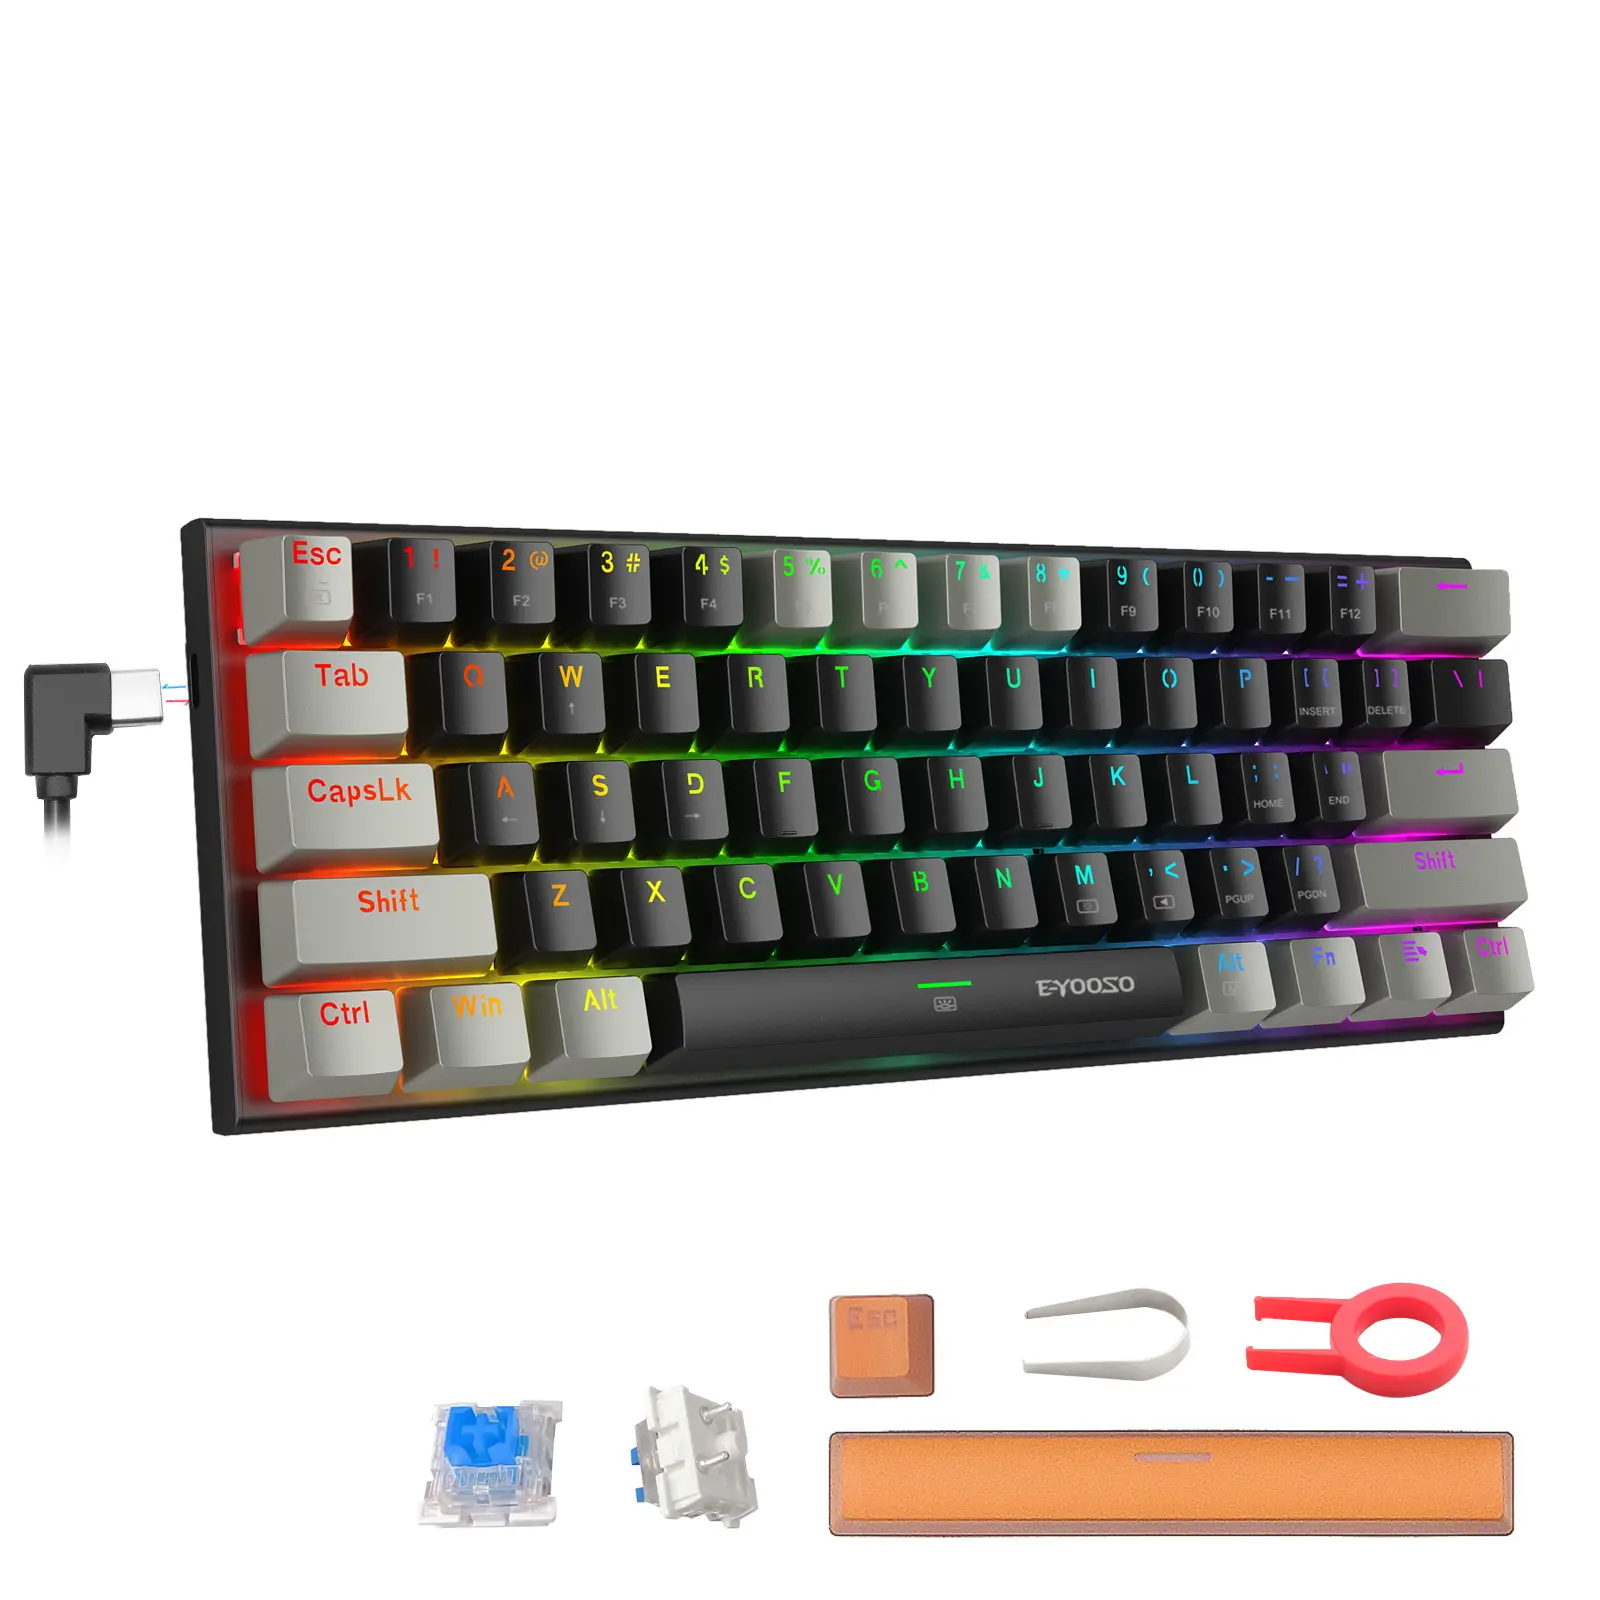 В наличии, игровой компьютер, клавиатура Teclado61, клавиши Rgb, OEM, игровая клавиатура с Цветной подсветкой, оптическая 60%, механические игровые клавиатуры